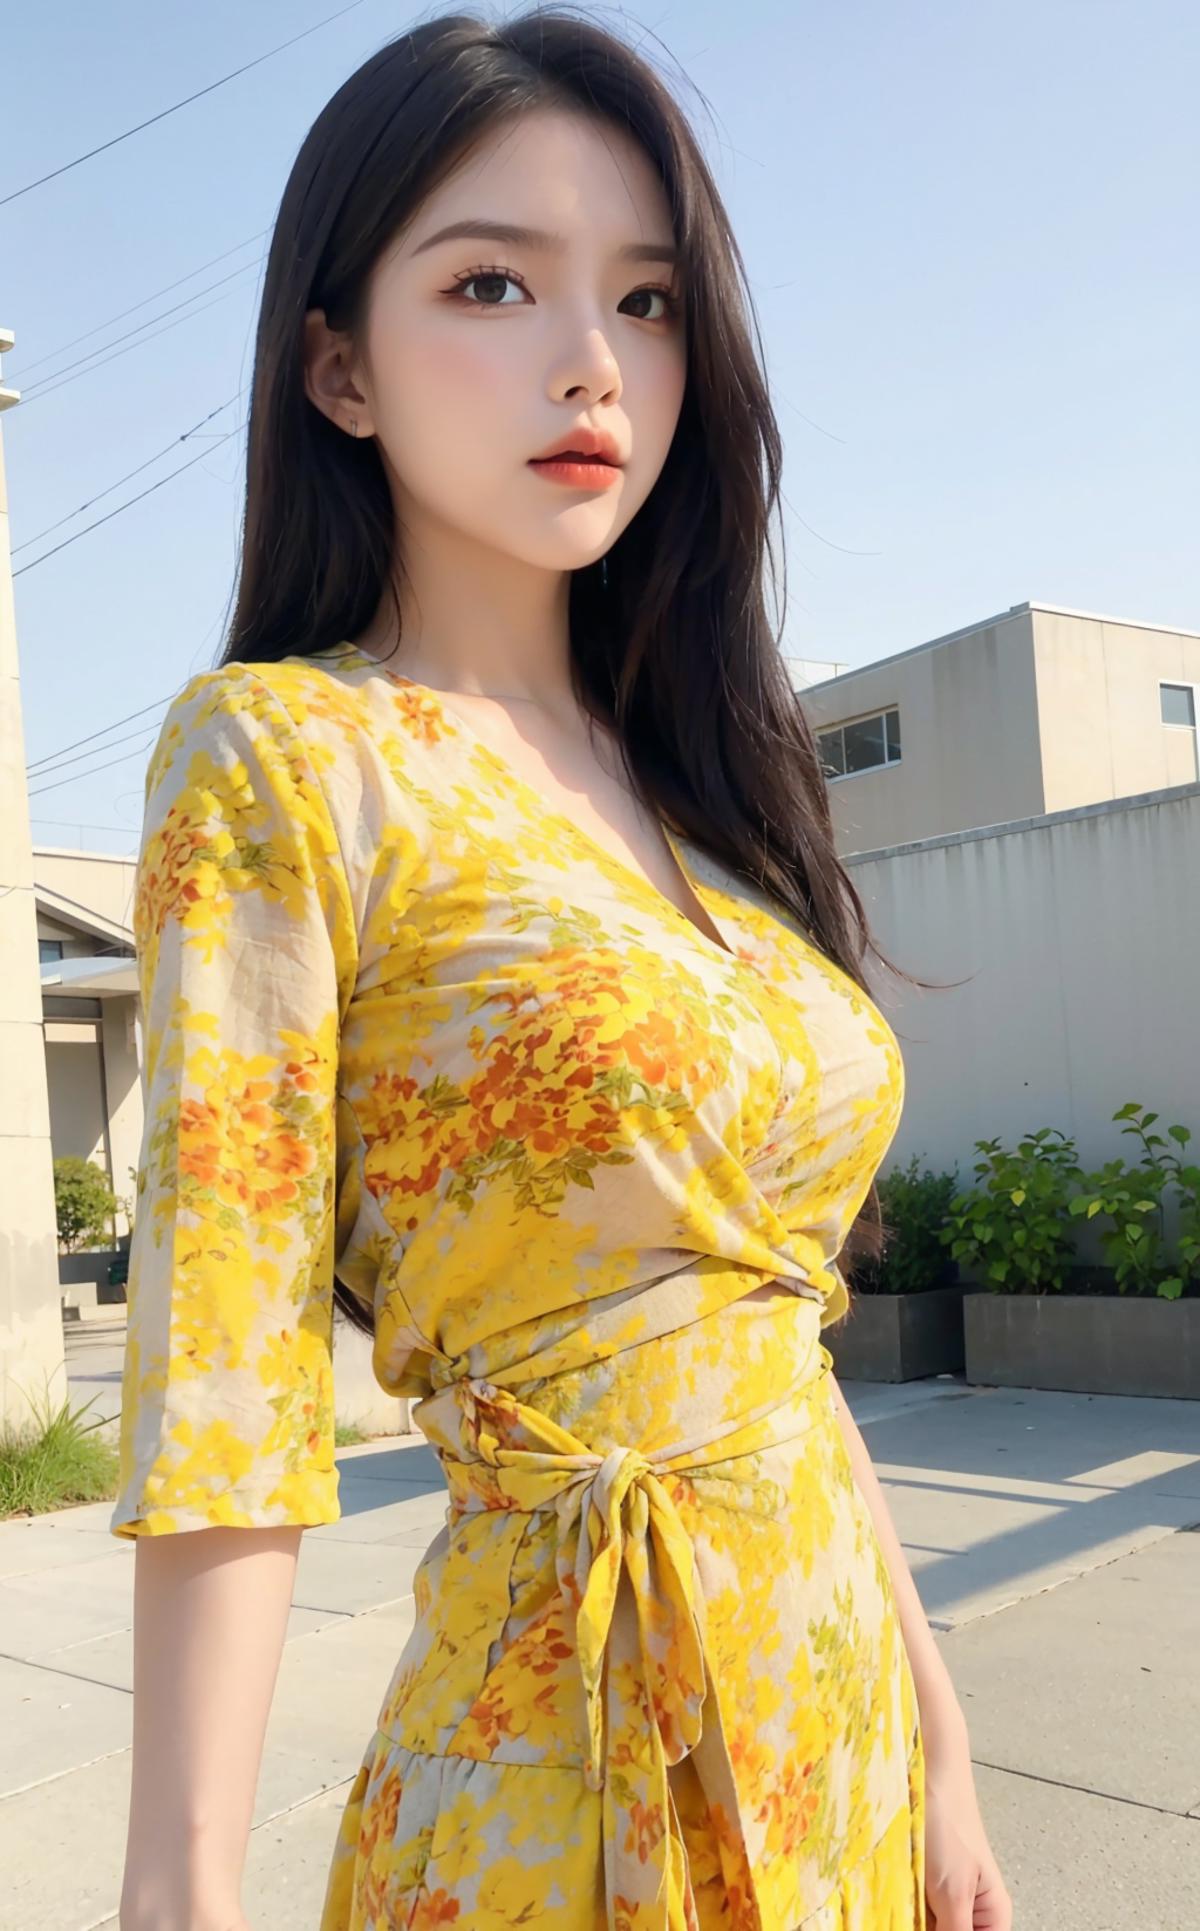 Yellow fashion dress|黄色战袍 image by wei001